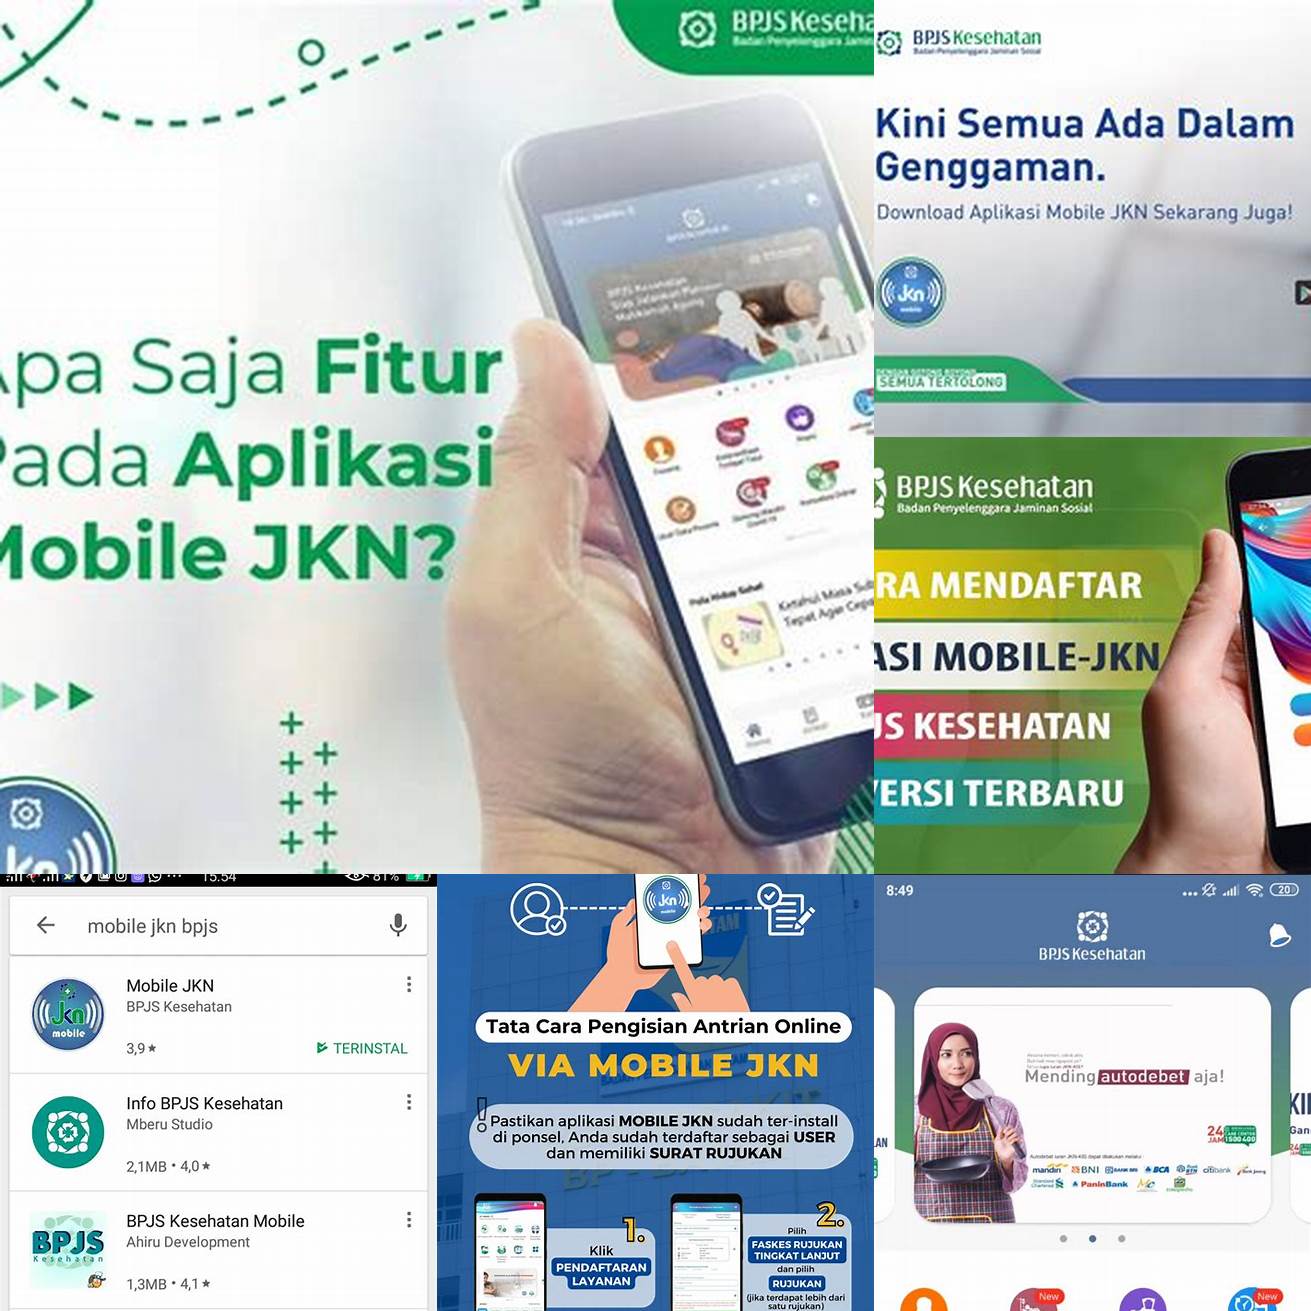 1 Buka aplikasi Mobile JKN di smartphone Anda